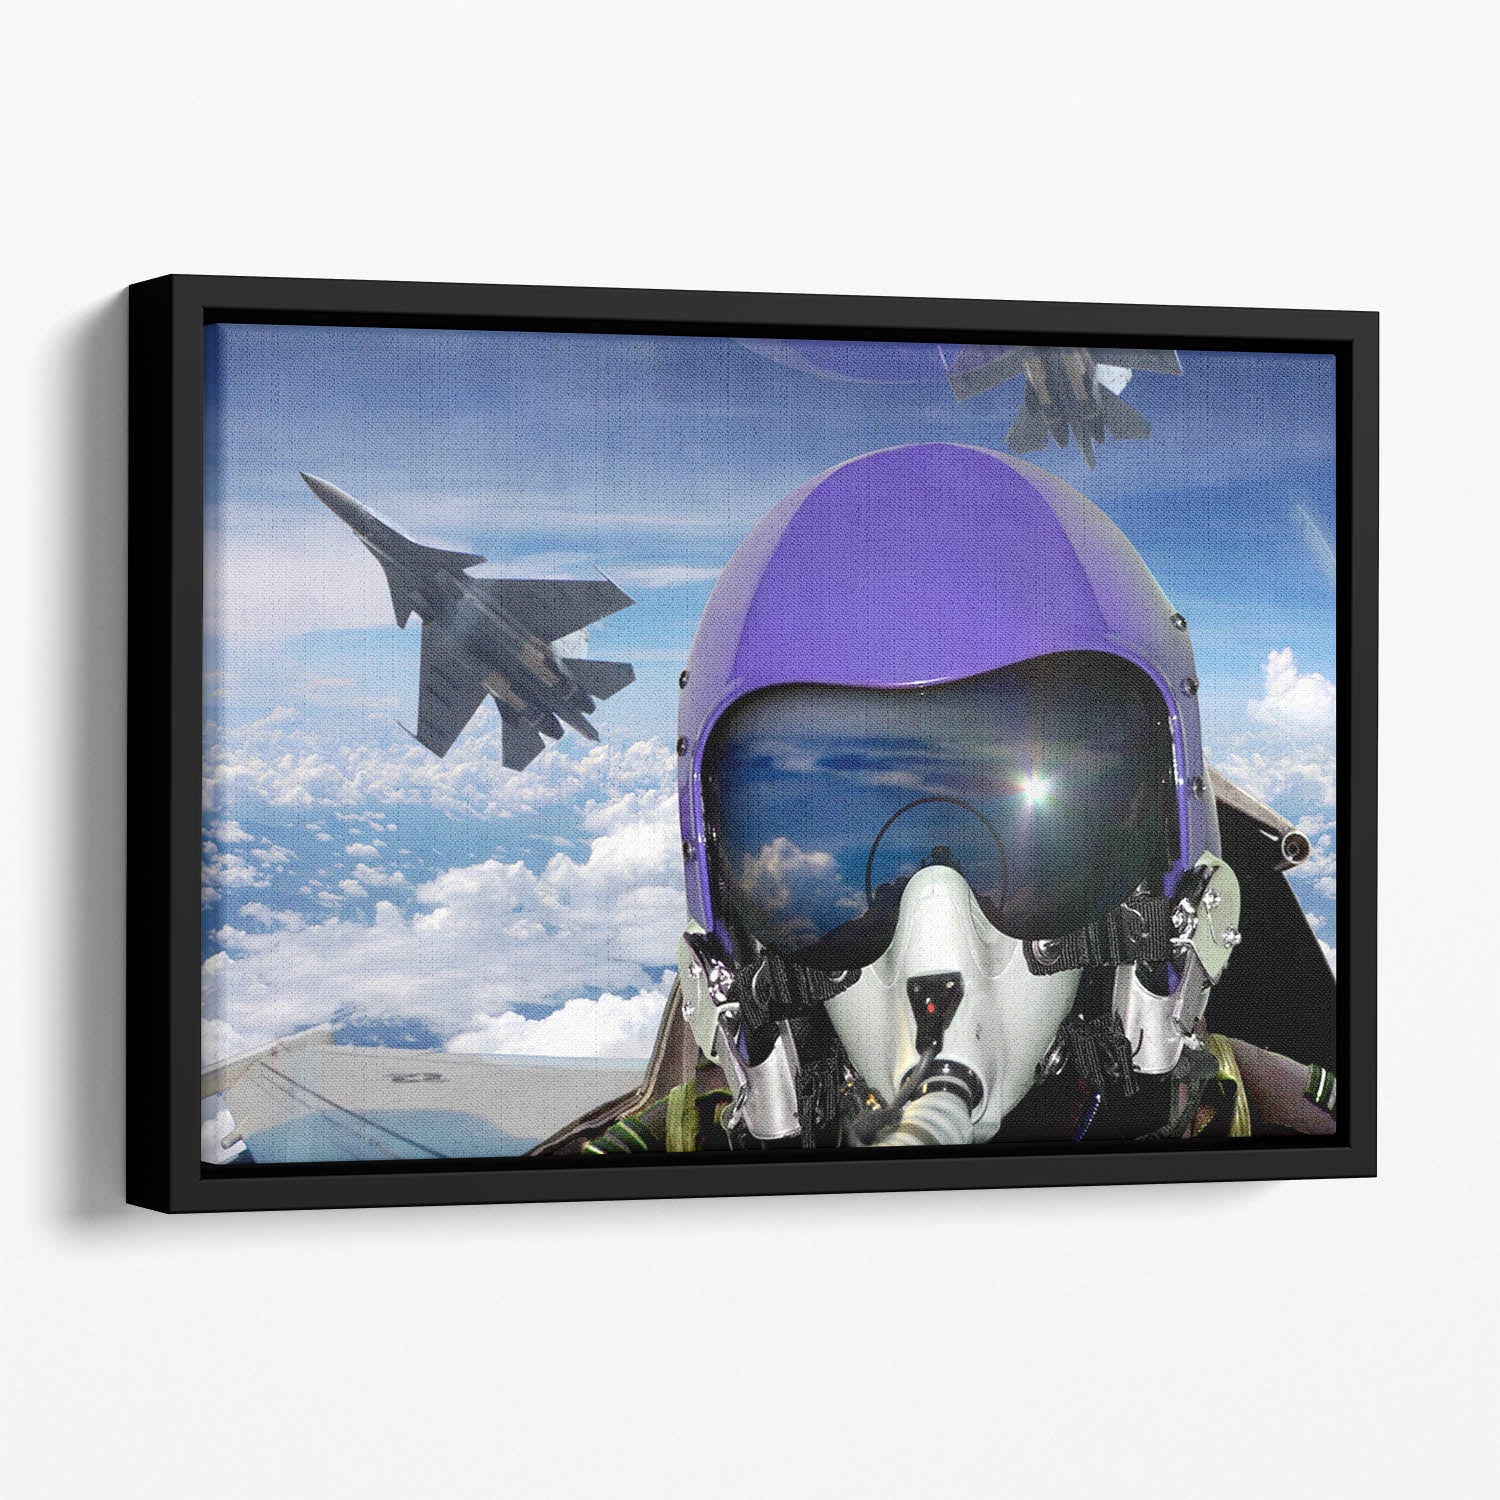 Jet fighter pilot cockpit view Floating Framed Canvas